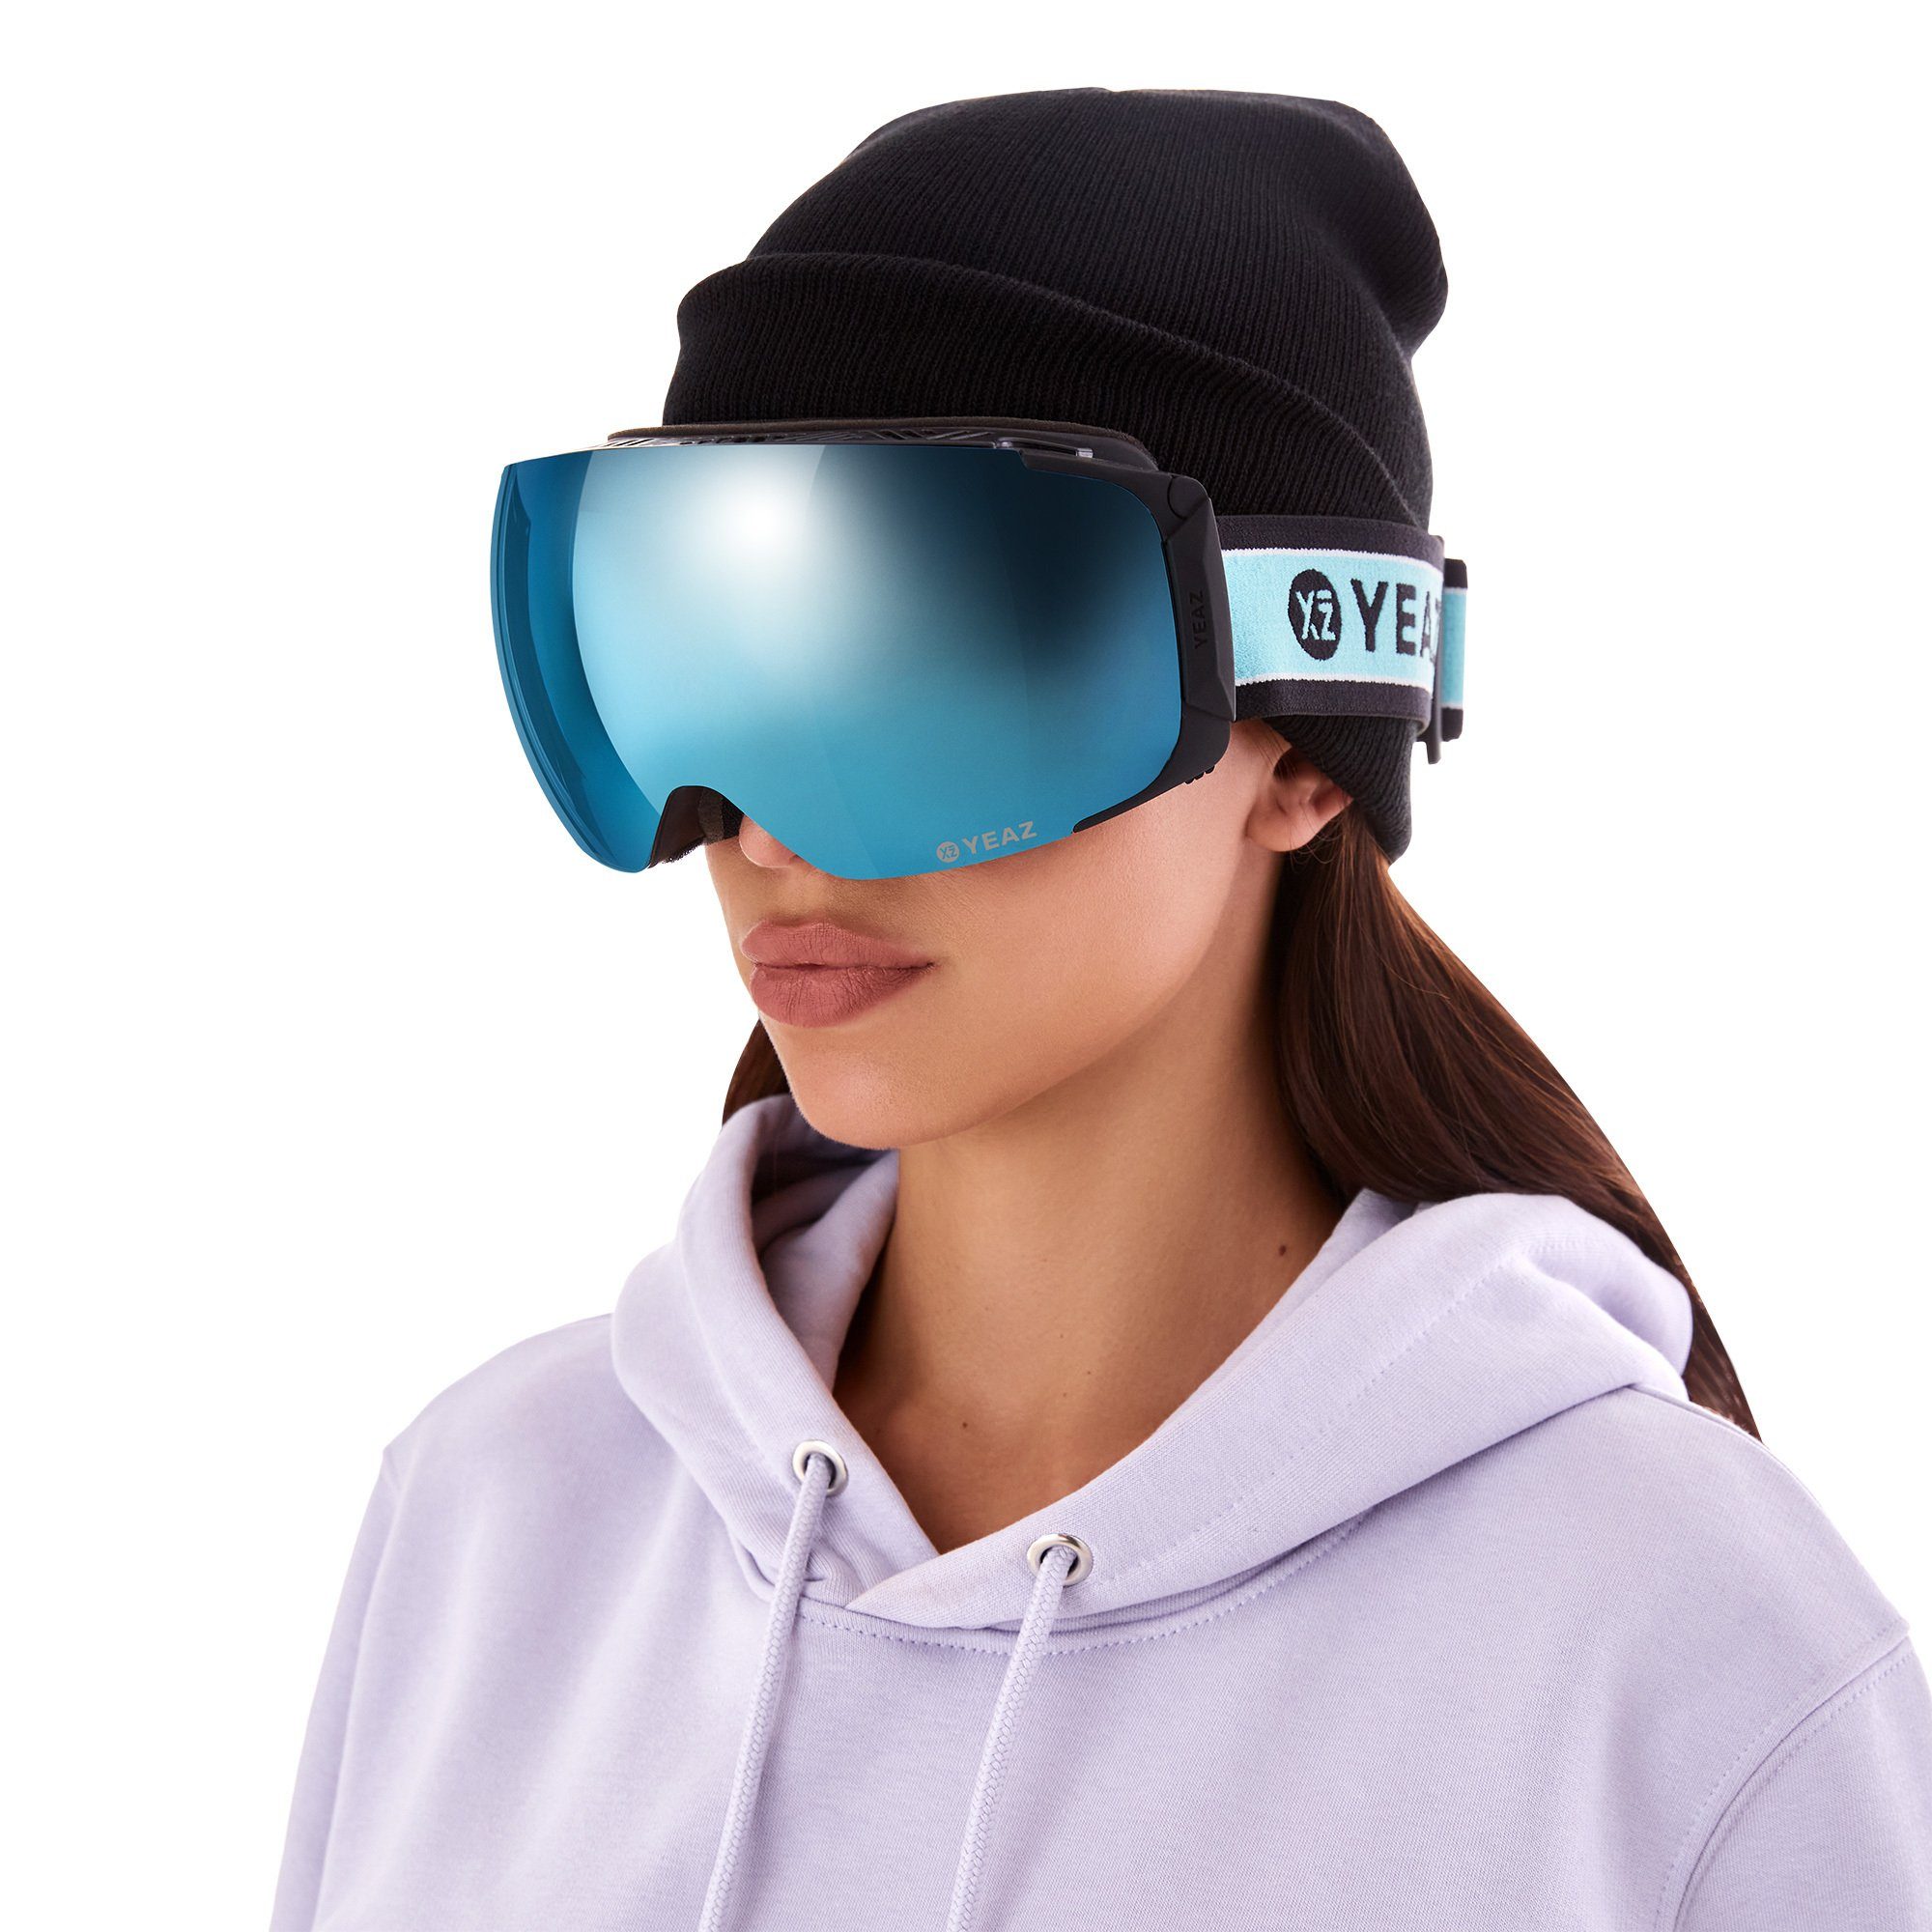 Premium-Ski- und und Skibrille für TWEAK-X YEAZ ski- Erwachsene und Jugendliche snowboard-brille, Snowboardbrille